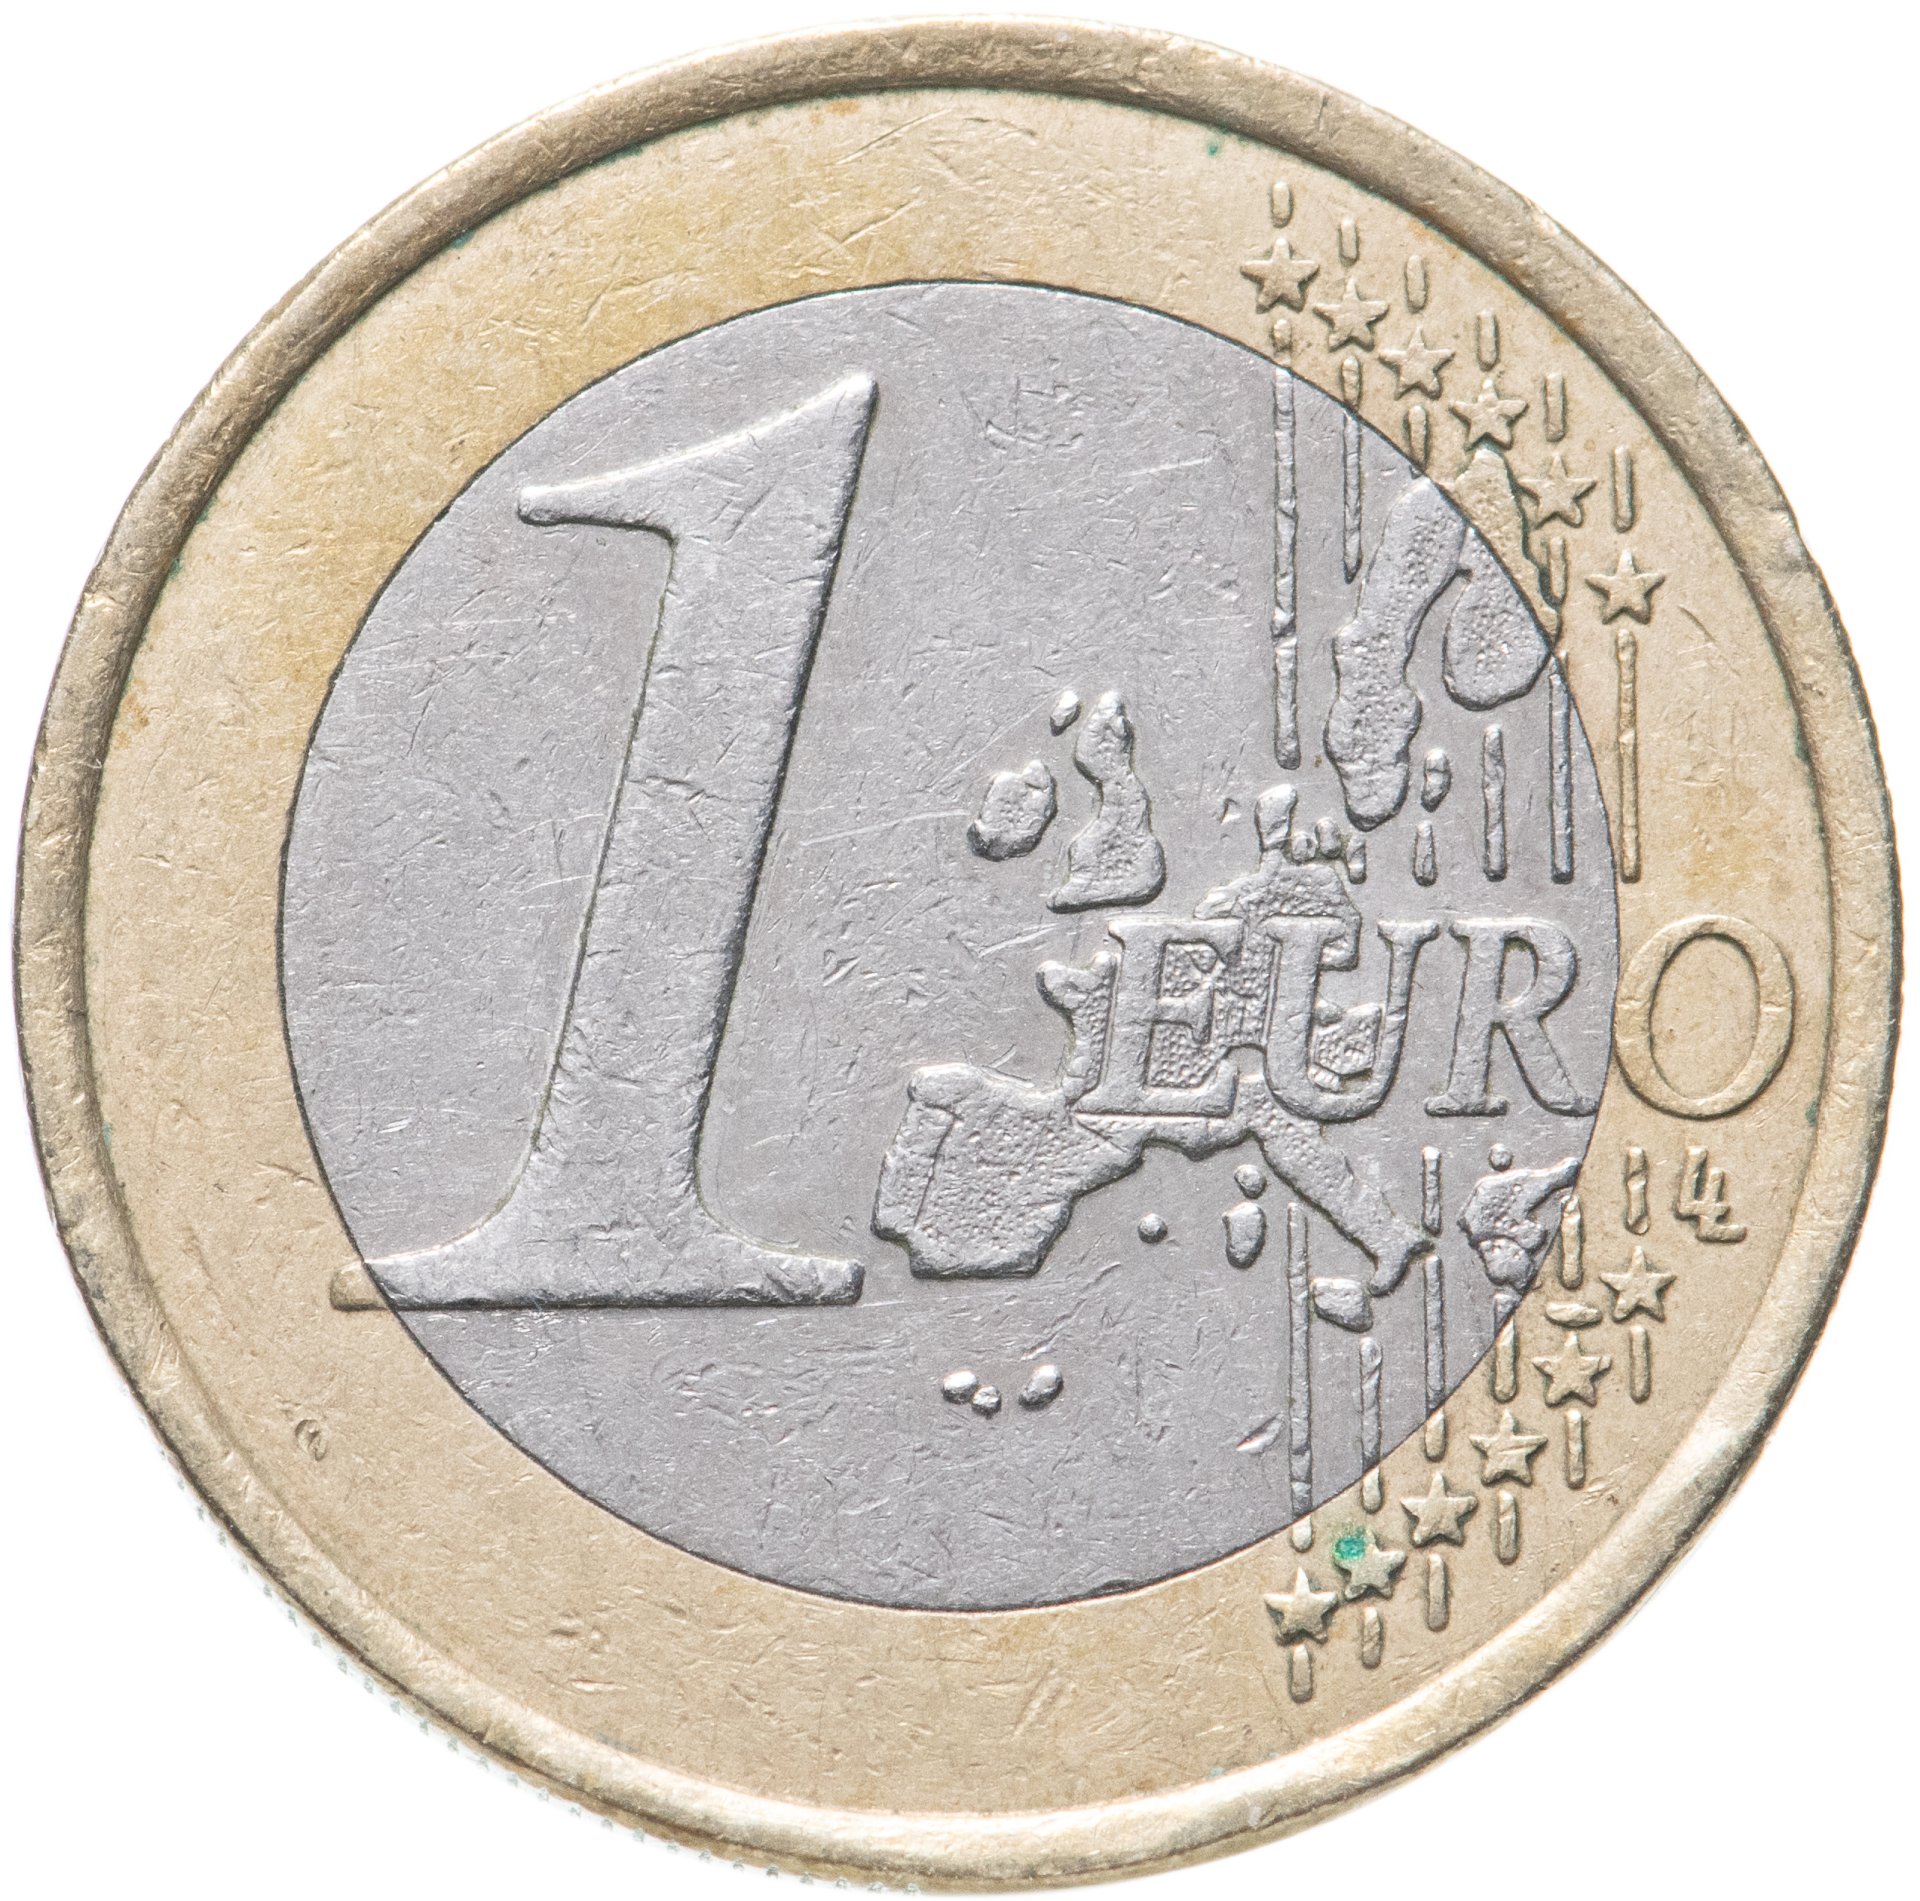 1 euro tanga